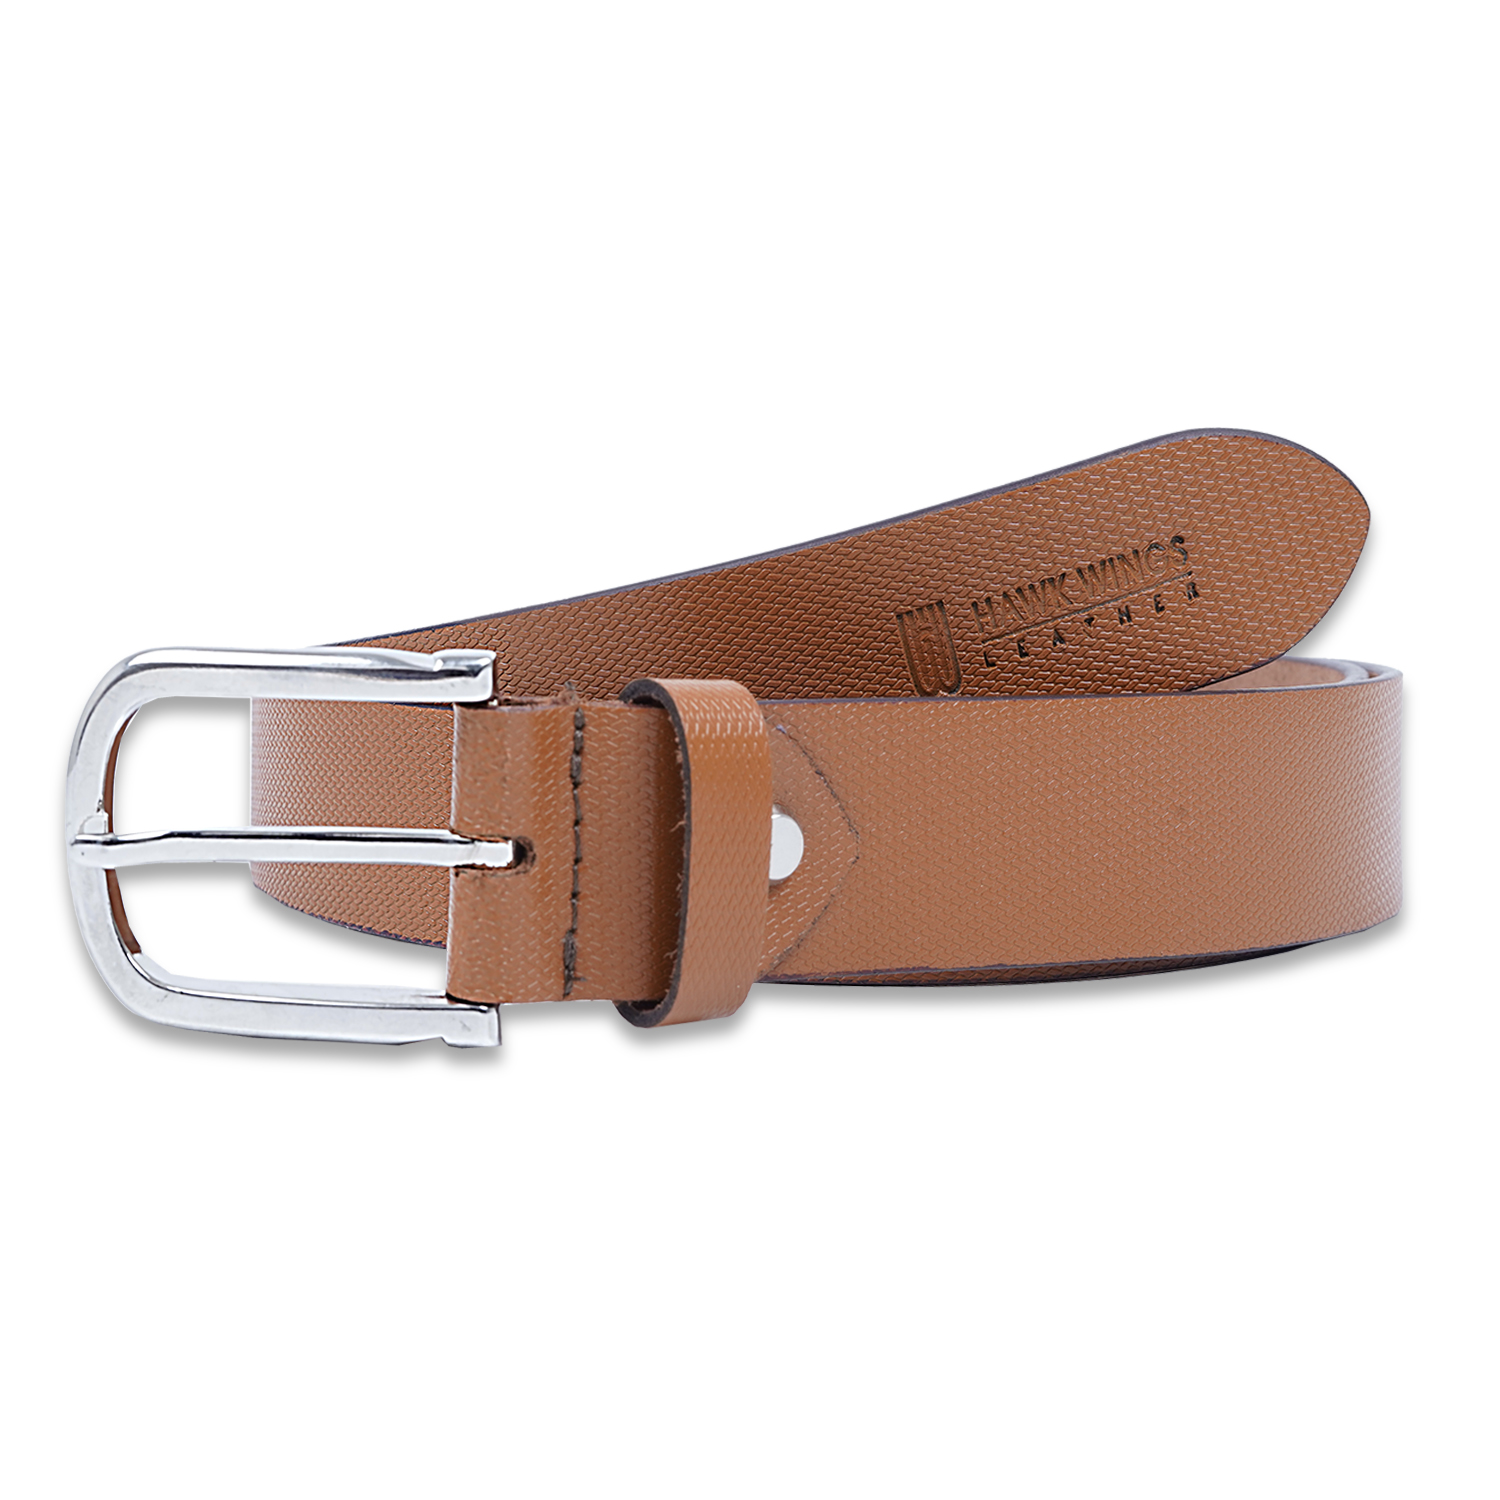  Genuine Leather Belt For Men's| Tan| Formal Belt-asset-280